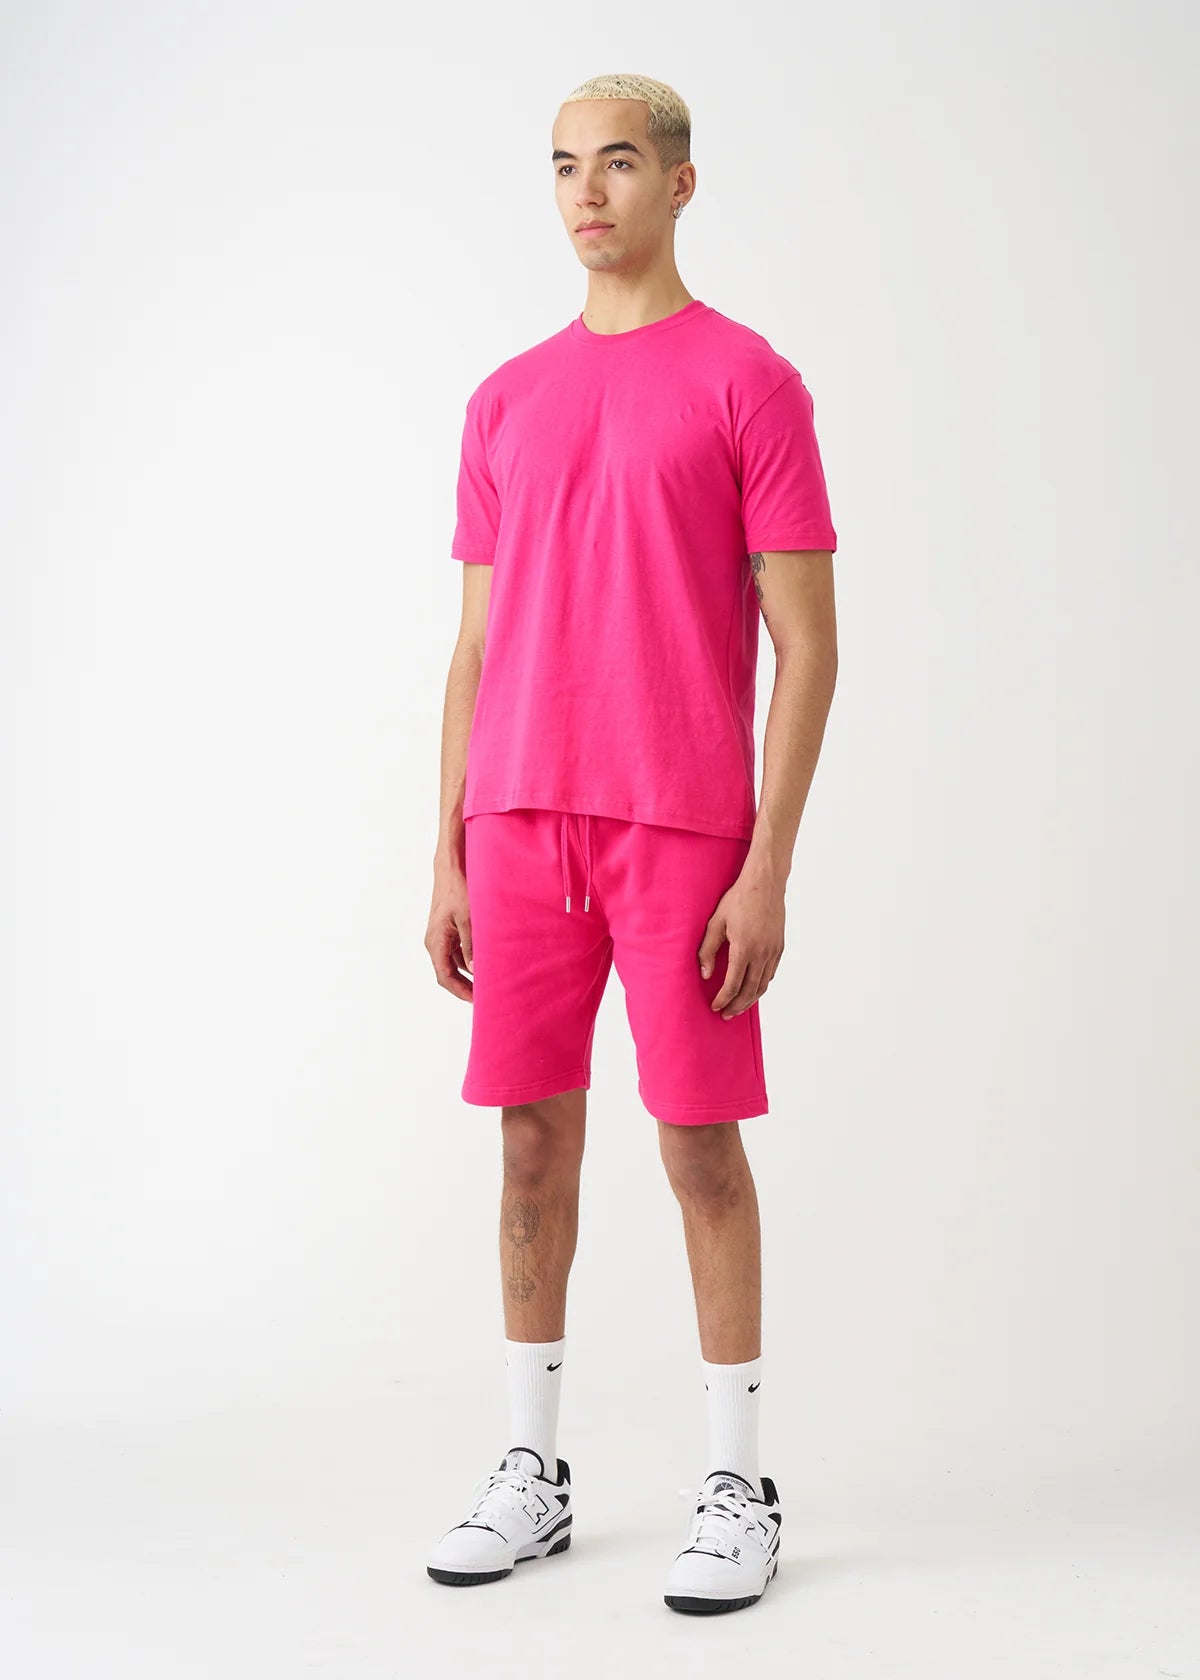 Hot Pink T-Shirt and Short Set